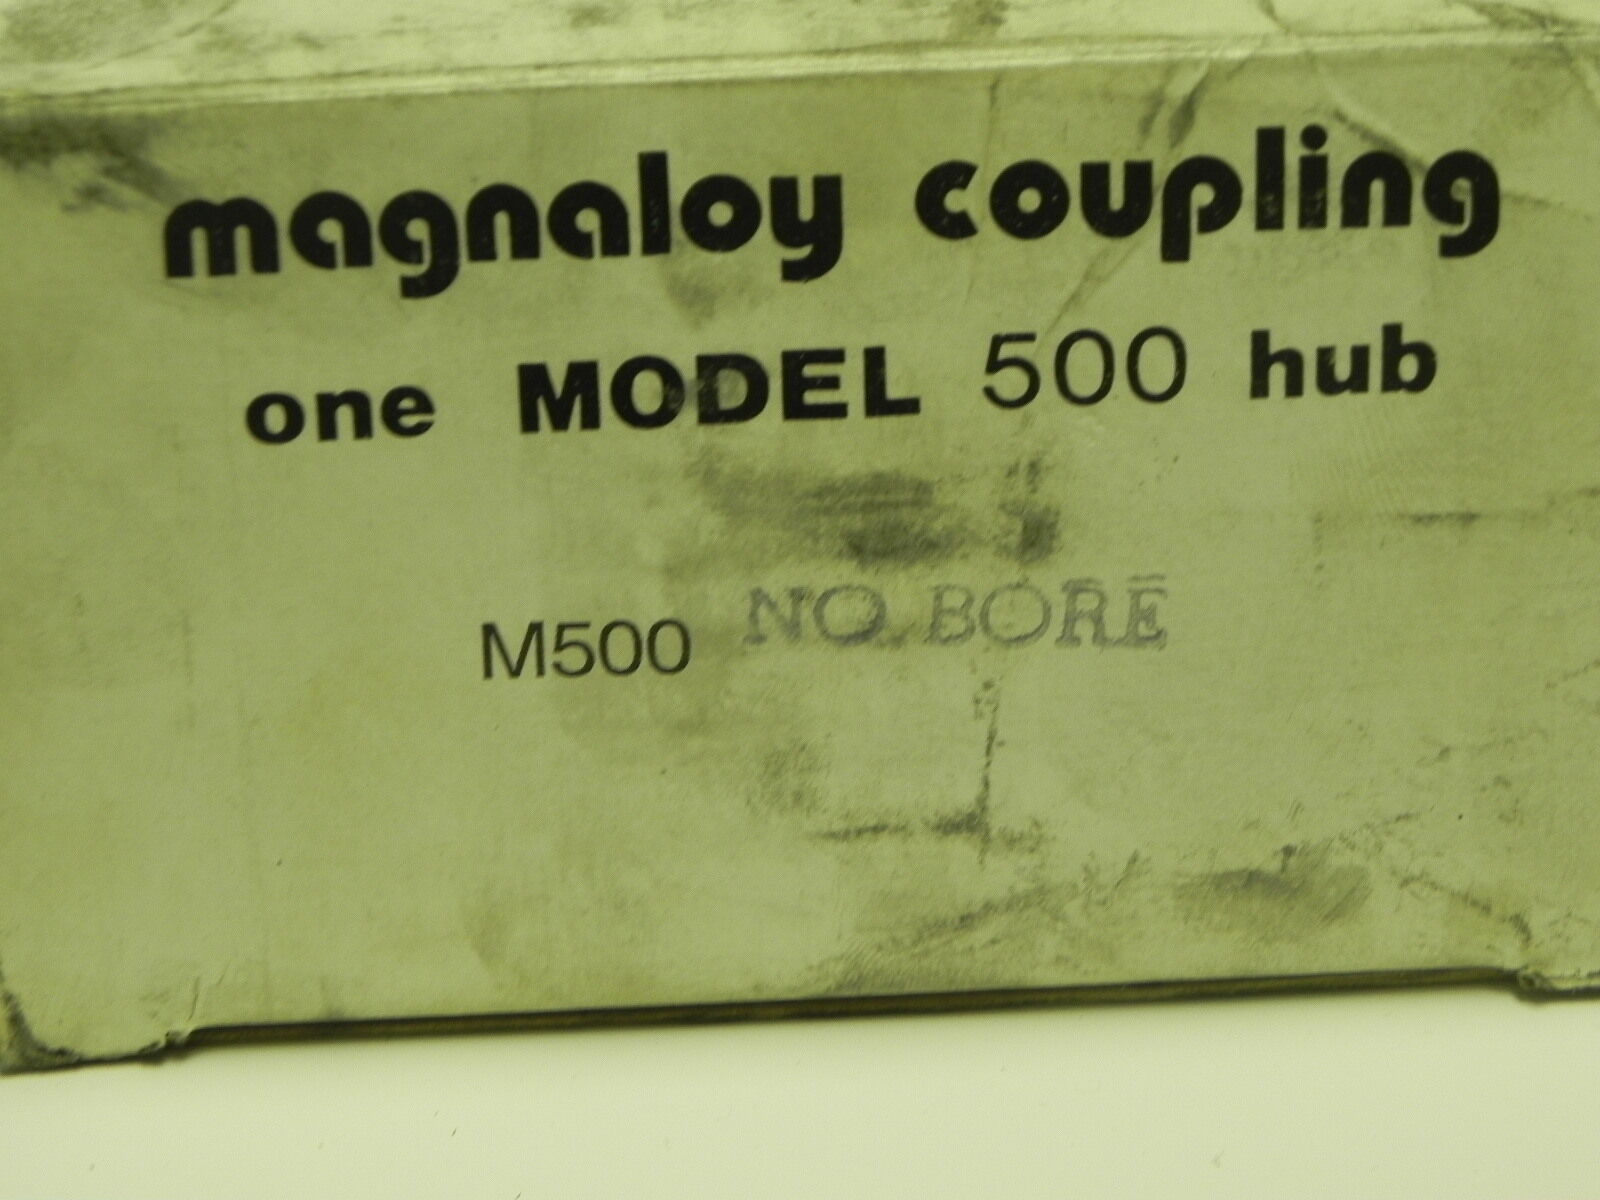 MAGNALOY COUPLING MODEL 500 HUB